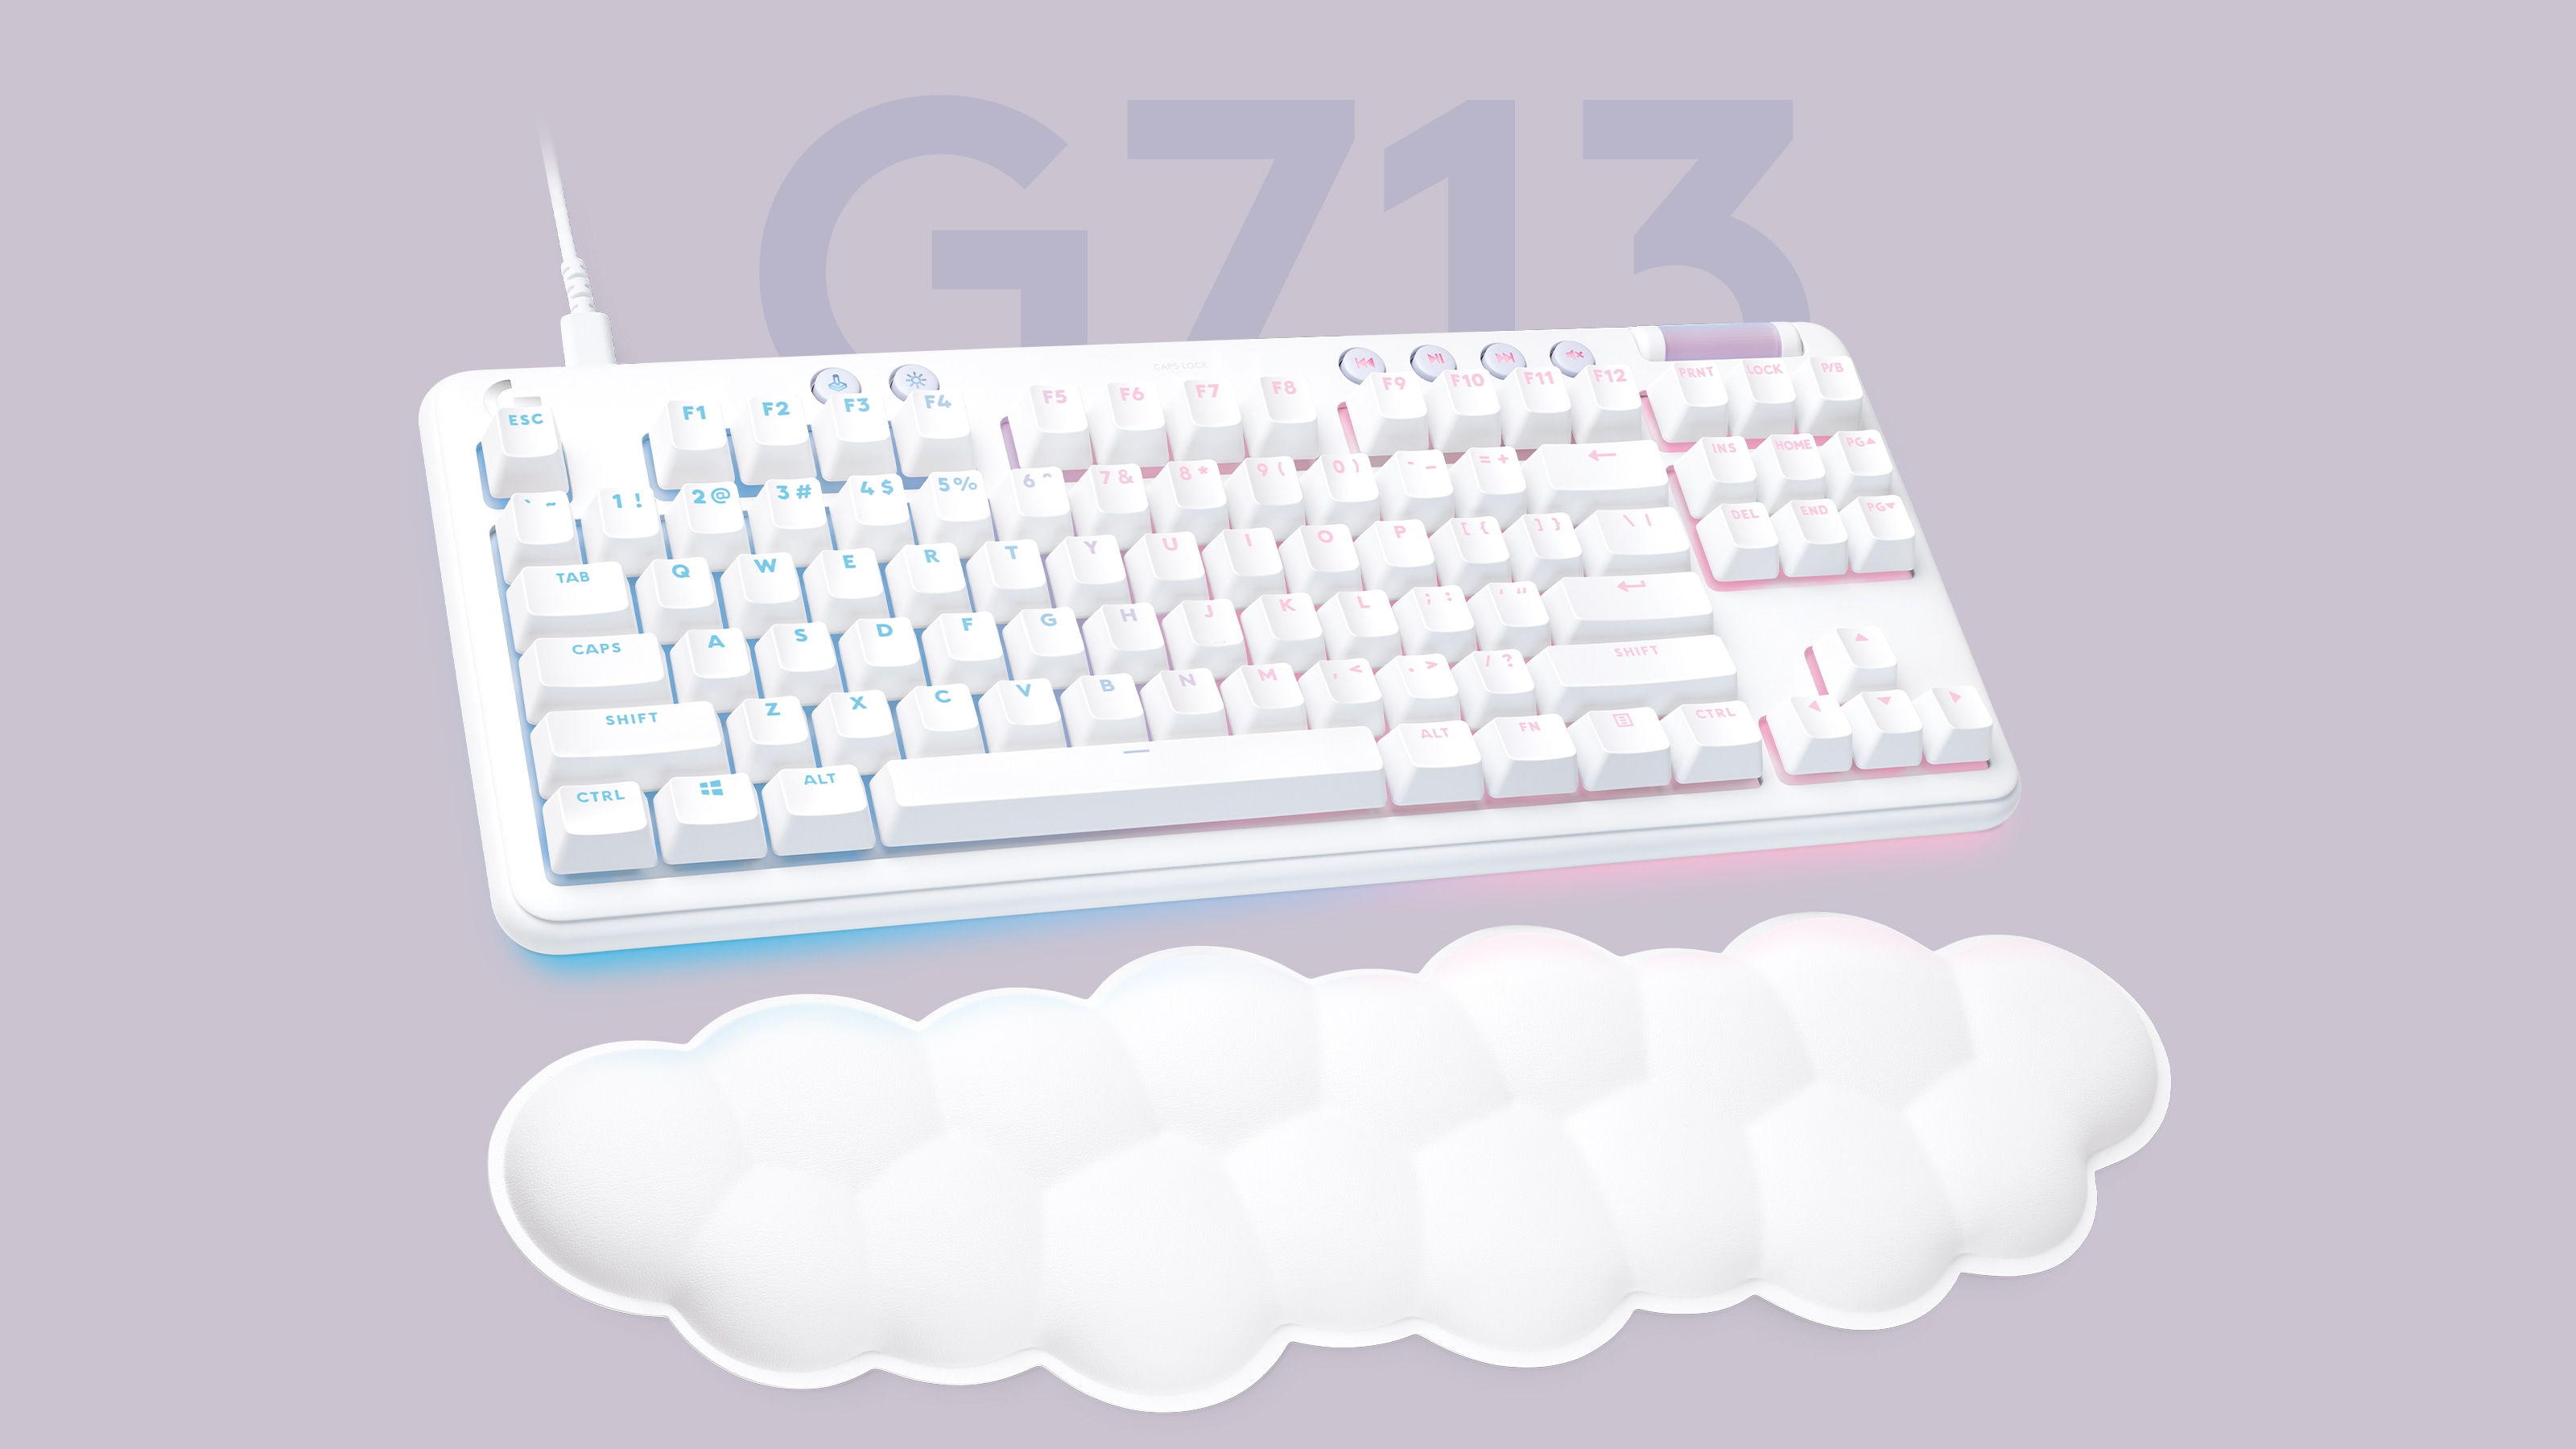 Logitech G713 gaming keyboard